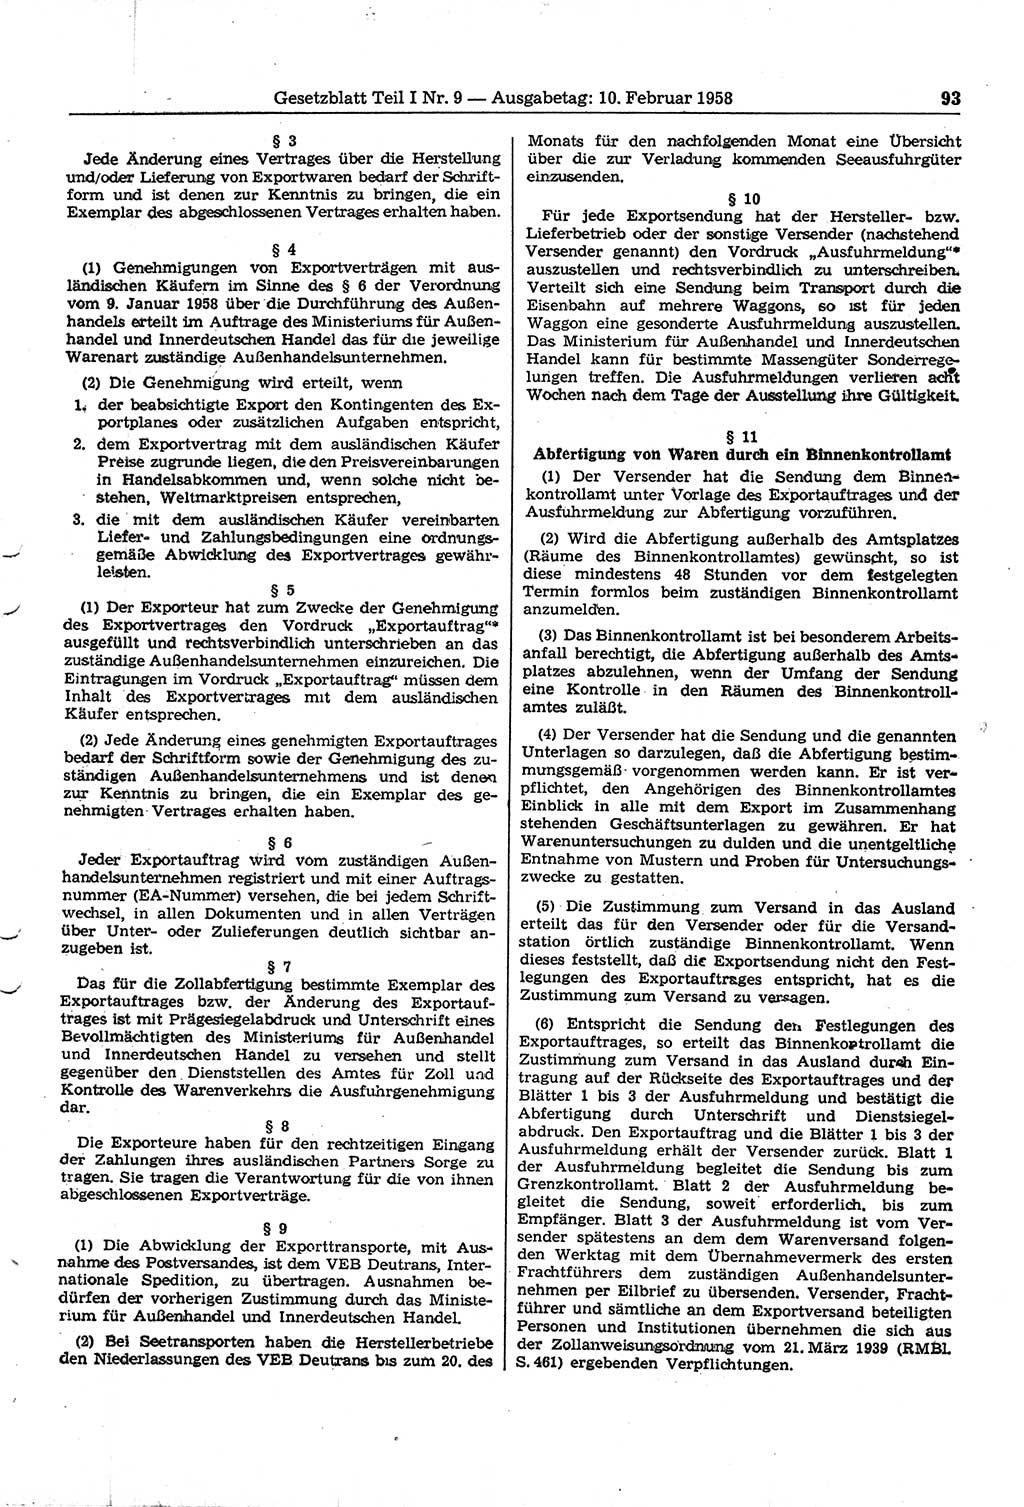 Gesetzblatt (GBl.) der Deutschen Demokratischen Republik (DDR) Teil Ⅰ 1958, Seite 93 (GBl. DDR Ⅰ 1958, S. 93)